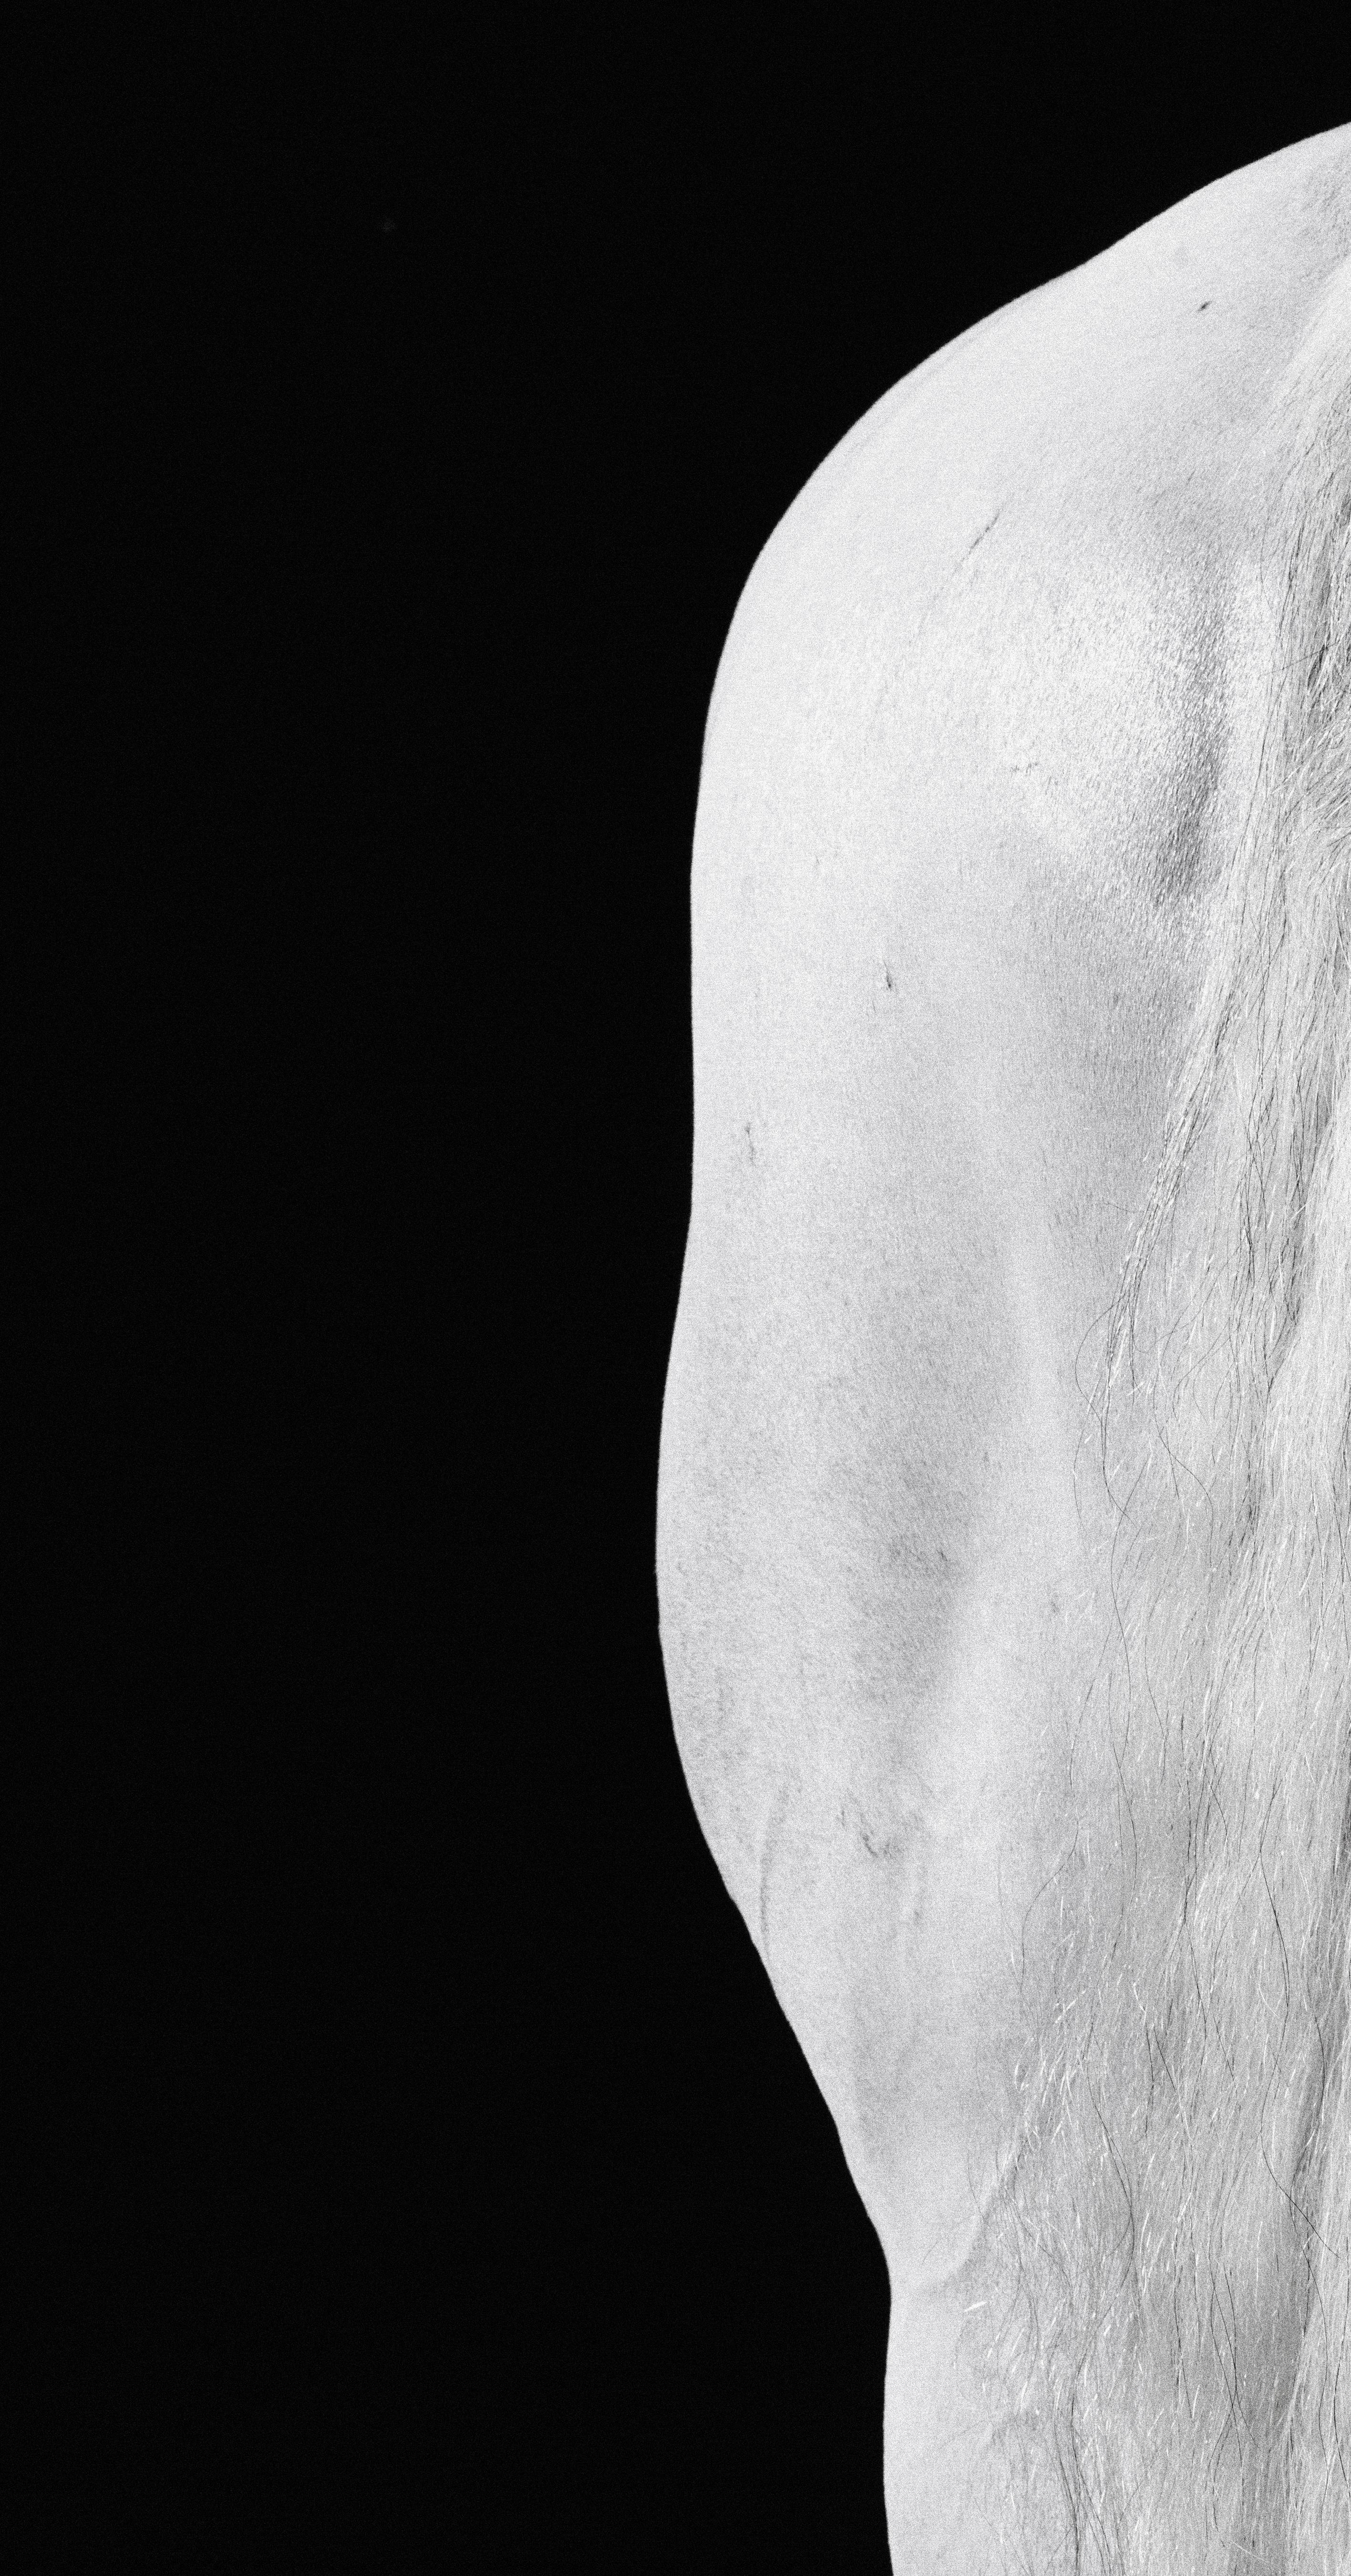 Carilot Tail, 2015 von Juan Lamarca
Hochwertiges archivfestes Baumwollpapier
Bildgröße: 40 x 30 Zoll
Ausgabe 1 von 10 plus 2 AP
Ungerahmt

Die Horse Series von Juan Lamarca ist eine abstrakte Sammlung von Fotografien, die Hochleistungspferde zeigen.